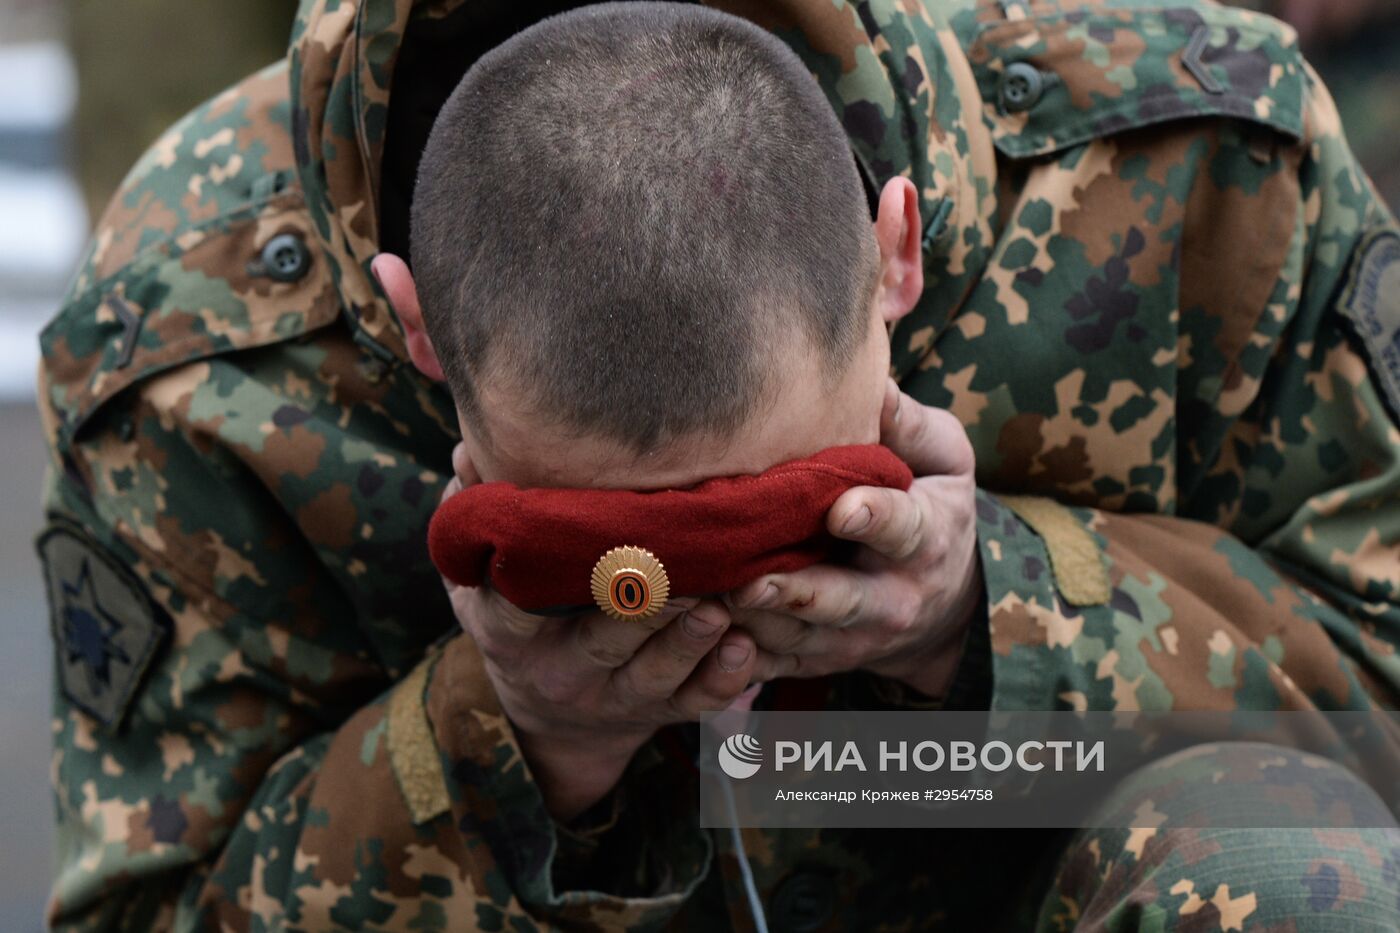 Испытания на право ношения крапового и зеленого берета среди военнослужащих Национальной гвардии РФ